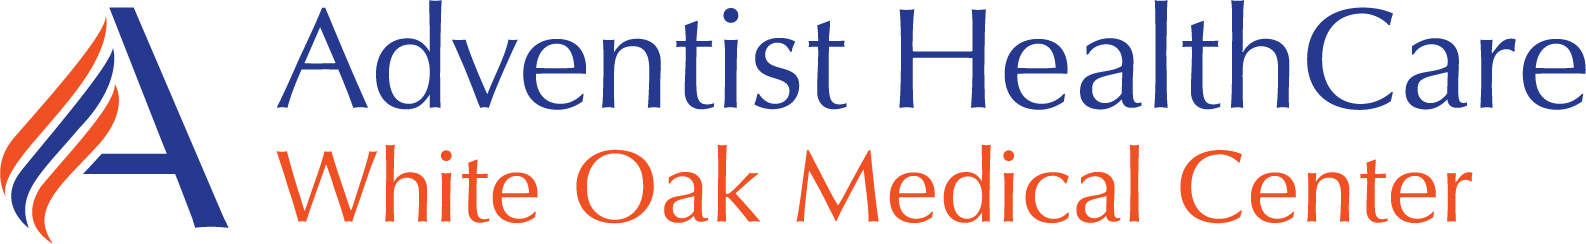 Adventist HealthCare White Oak Medical Center logo